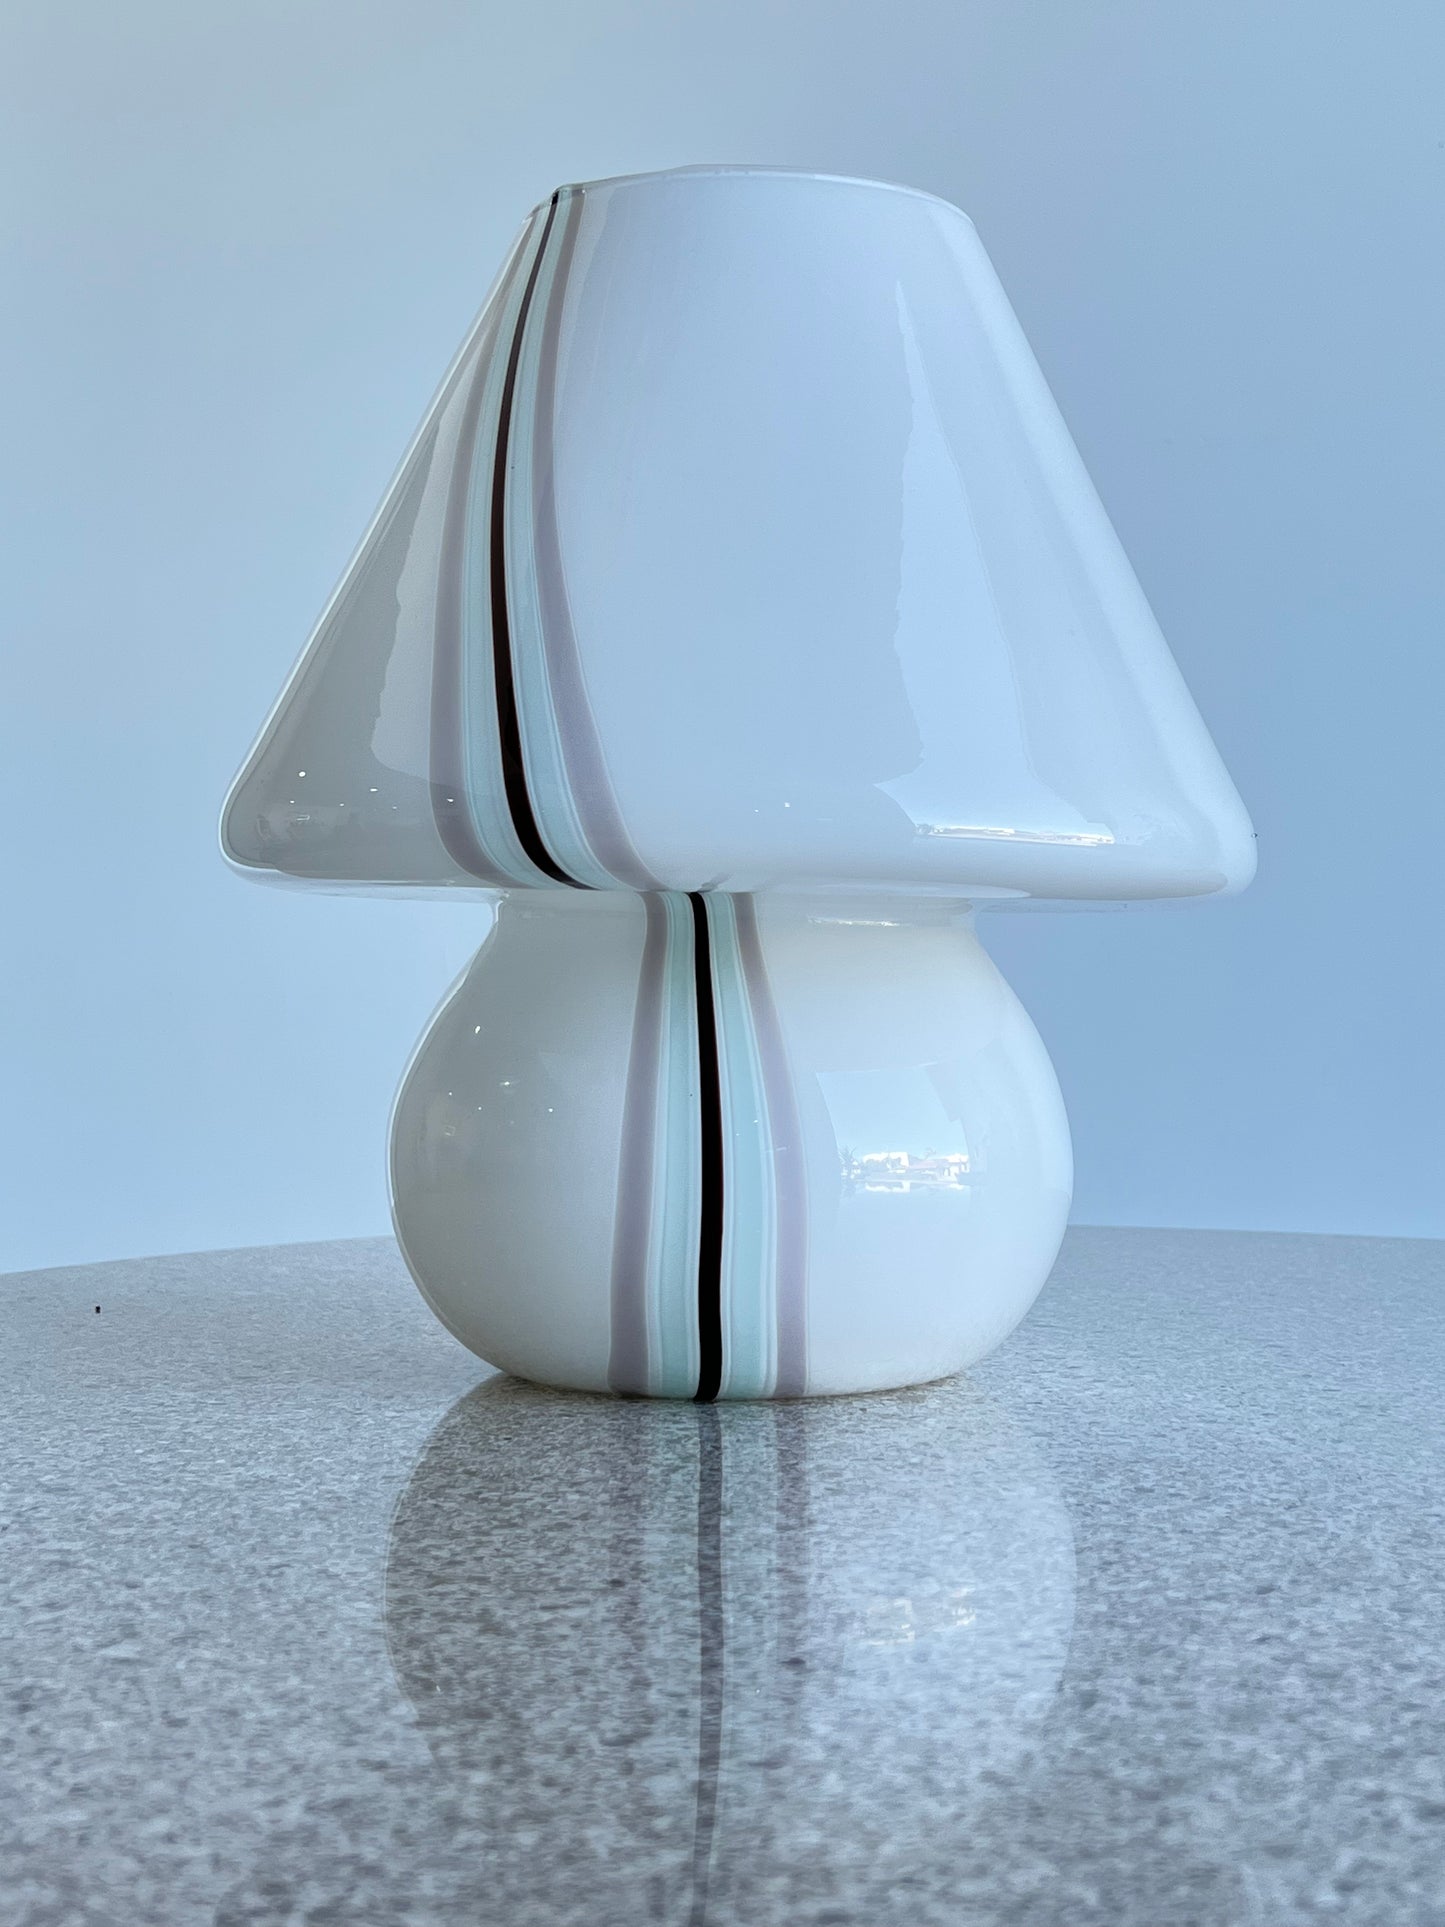 "Mushroom" Murano Table Lamp by Paolo Venini, 1970s